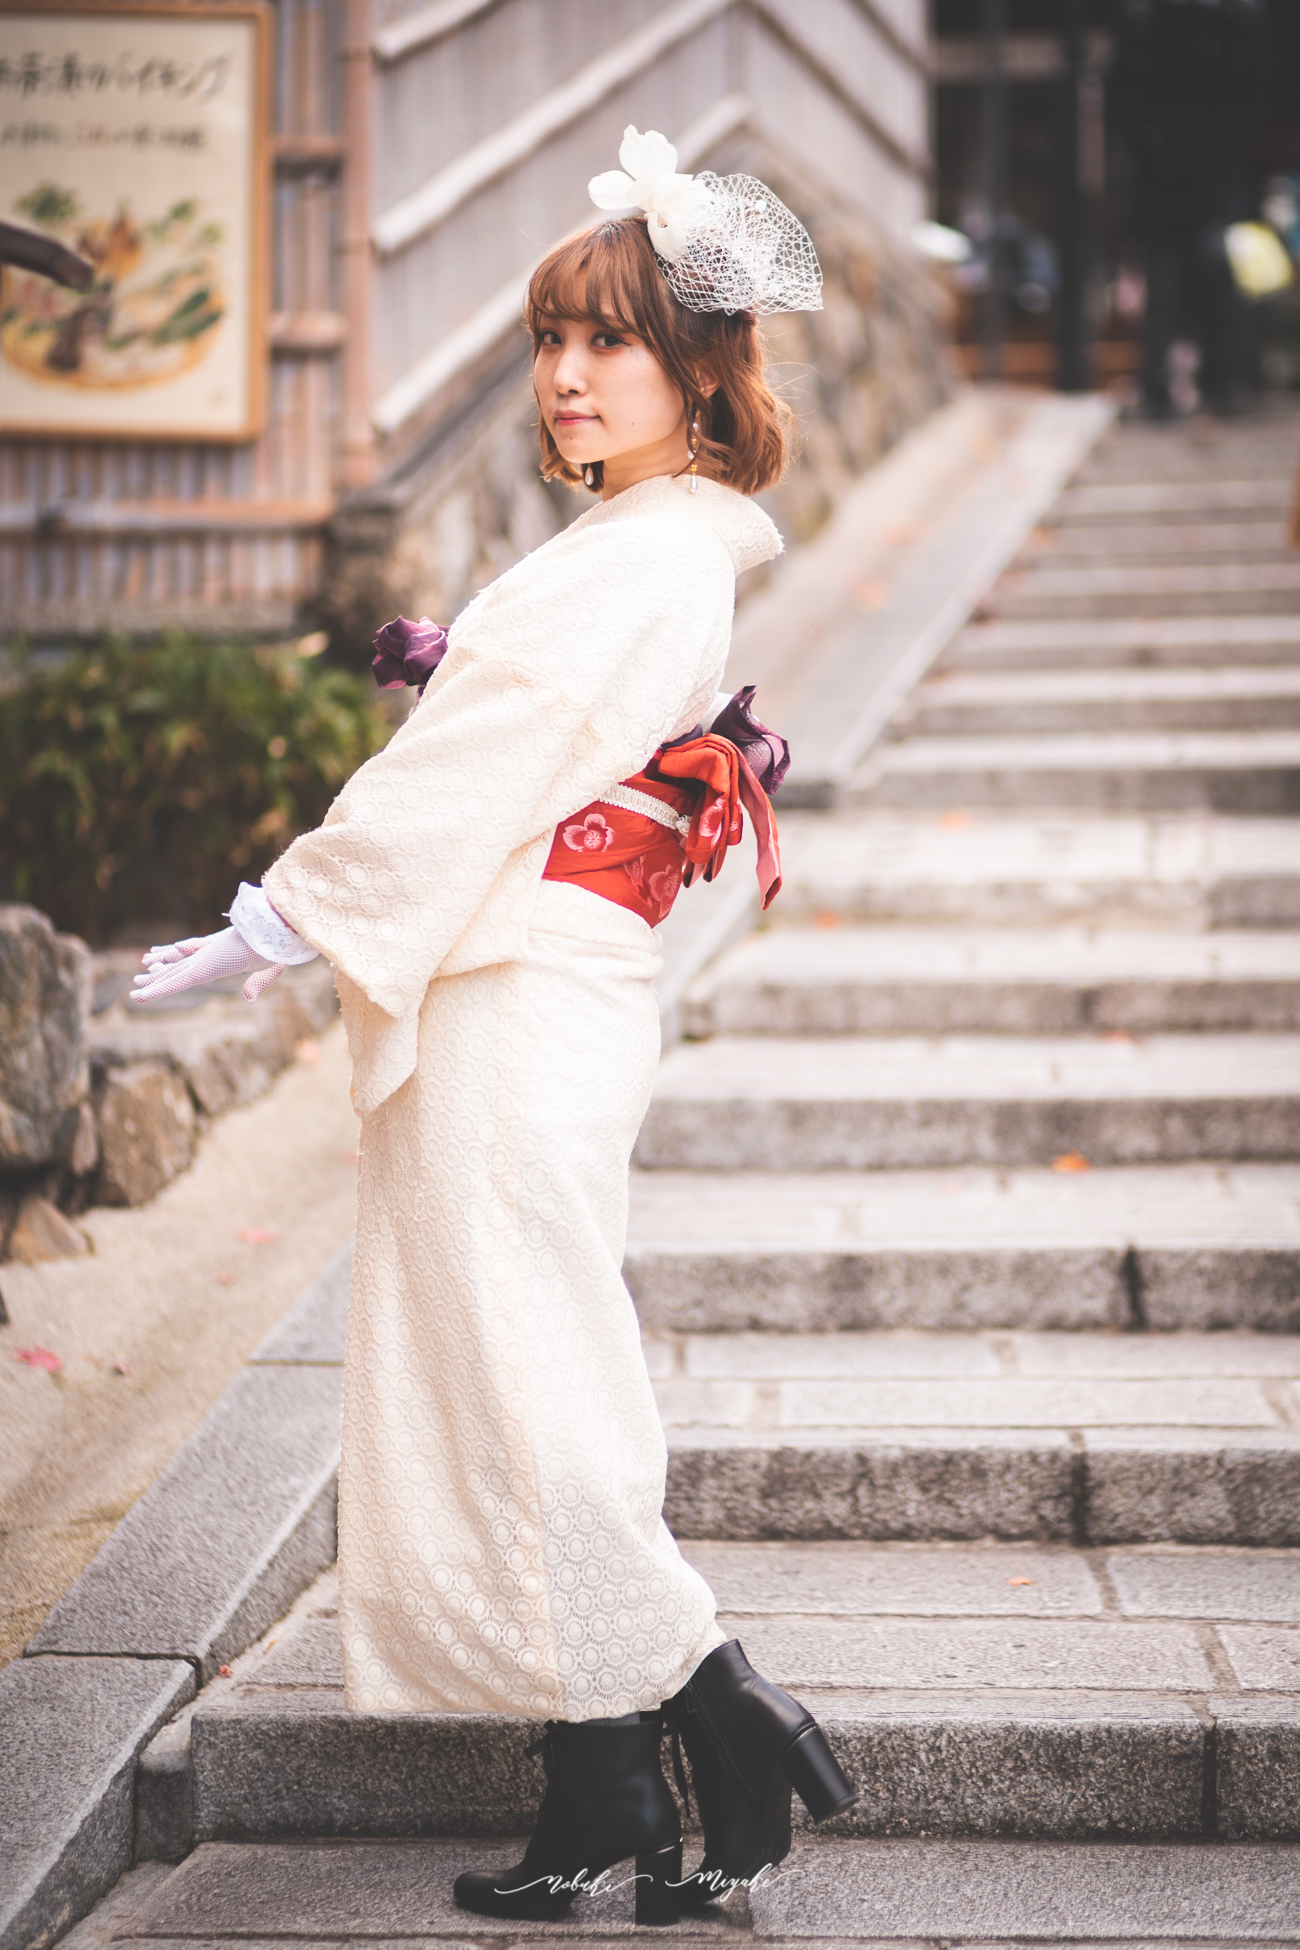 和装を着た女性のポートレート写真。